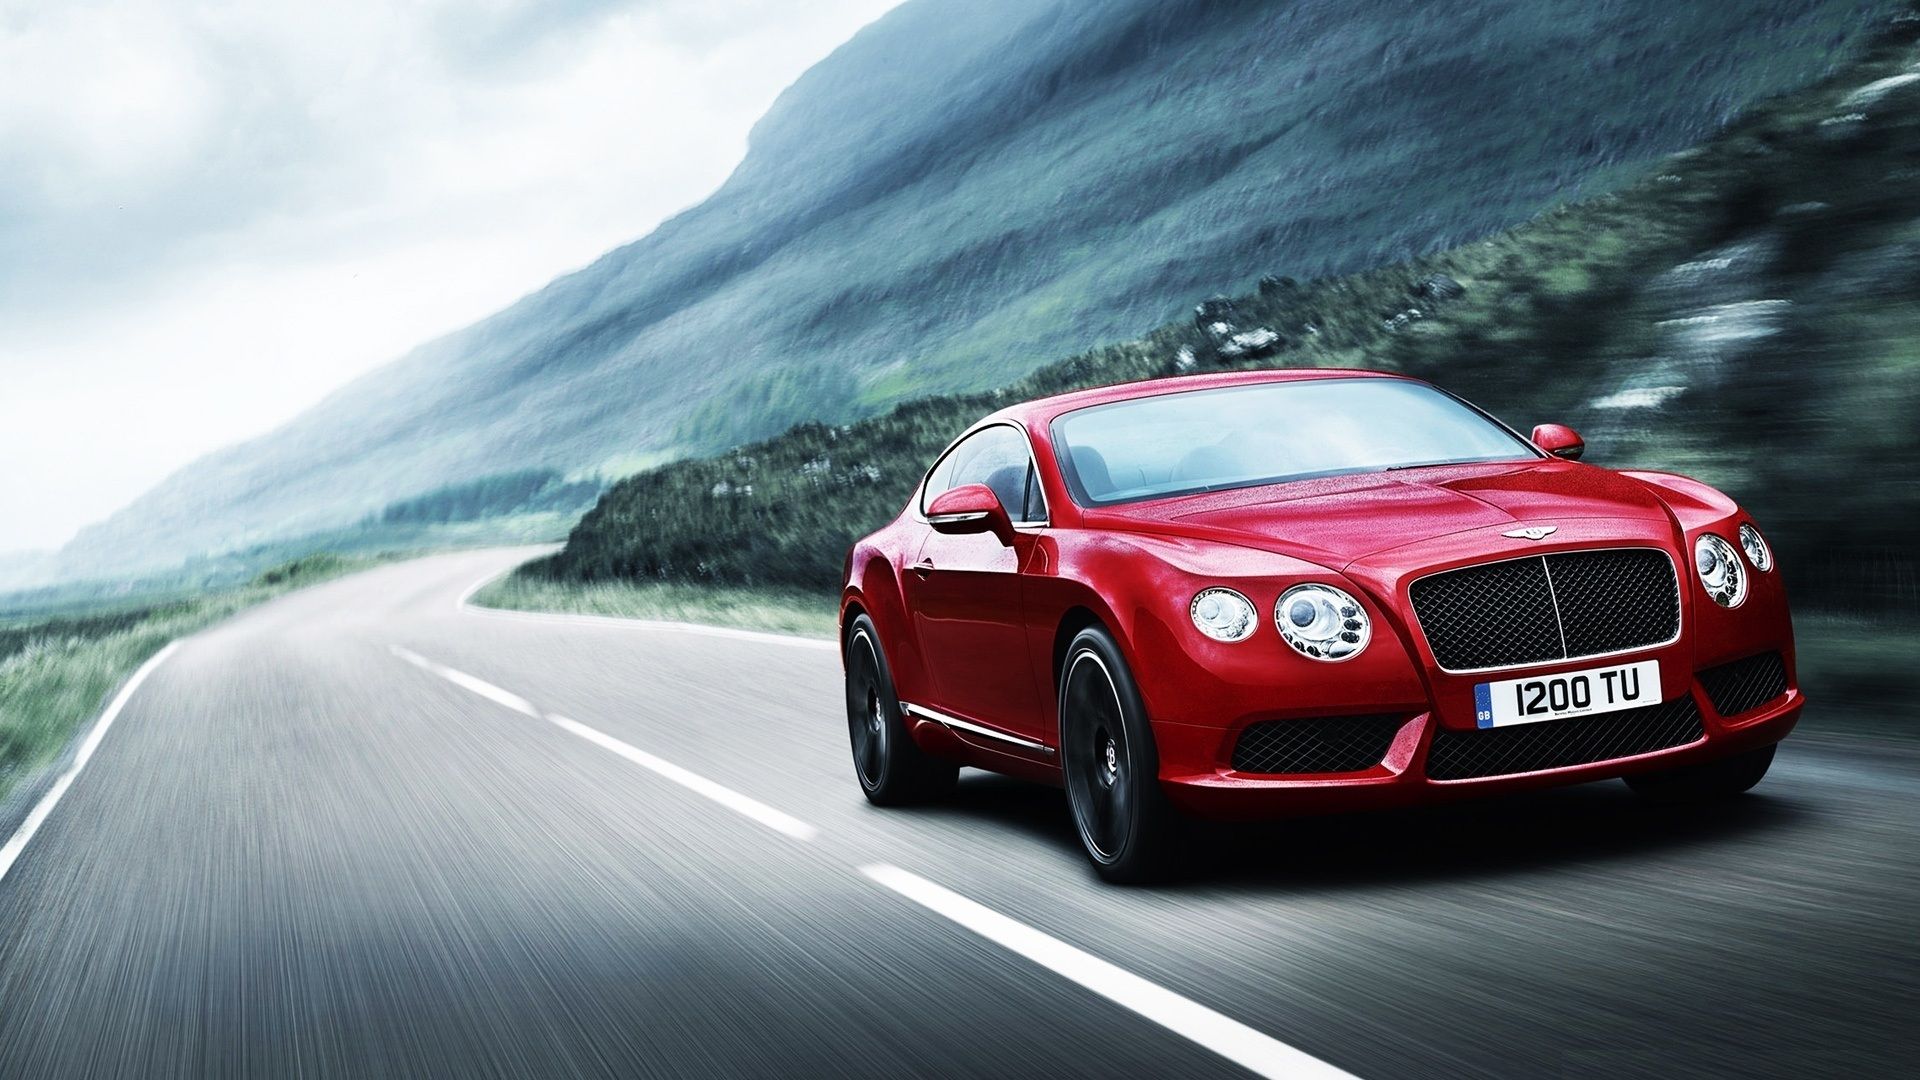 Xe Bentley đỏ mang đến cảm giác quyền lực và đẳng cấp cho người sử dụng. Hãy chiêm ngưỡng những hình ảnh chiếc xe Bentley đỏ tuyệt đẹp, với động cơ mạnh mẽ và kiểu dáng đậm chất thể thao.